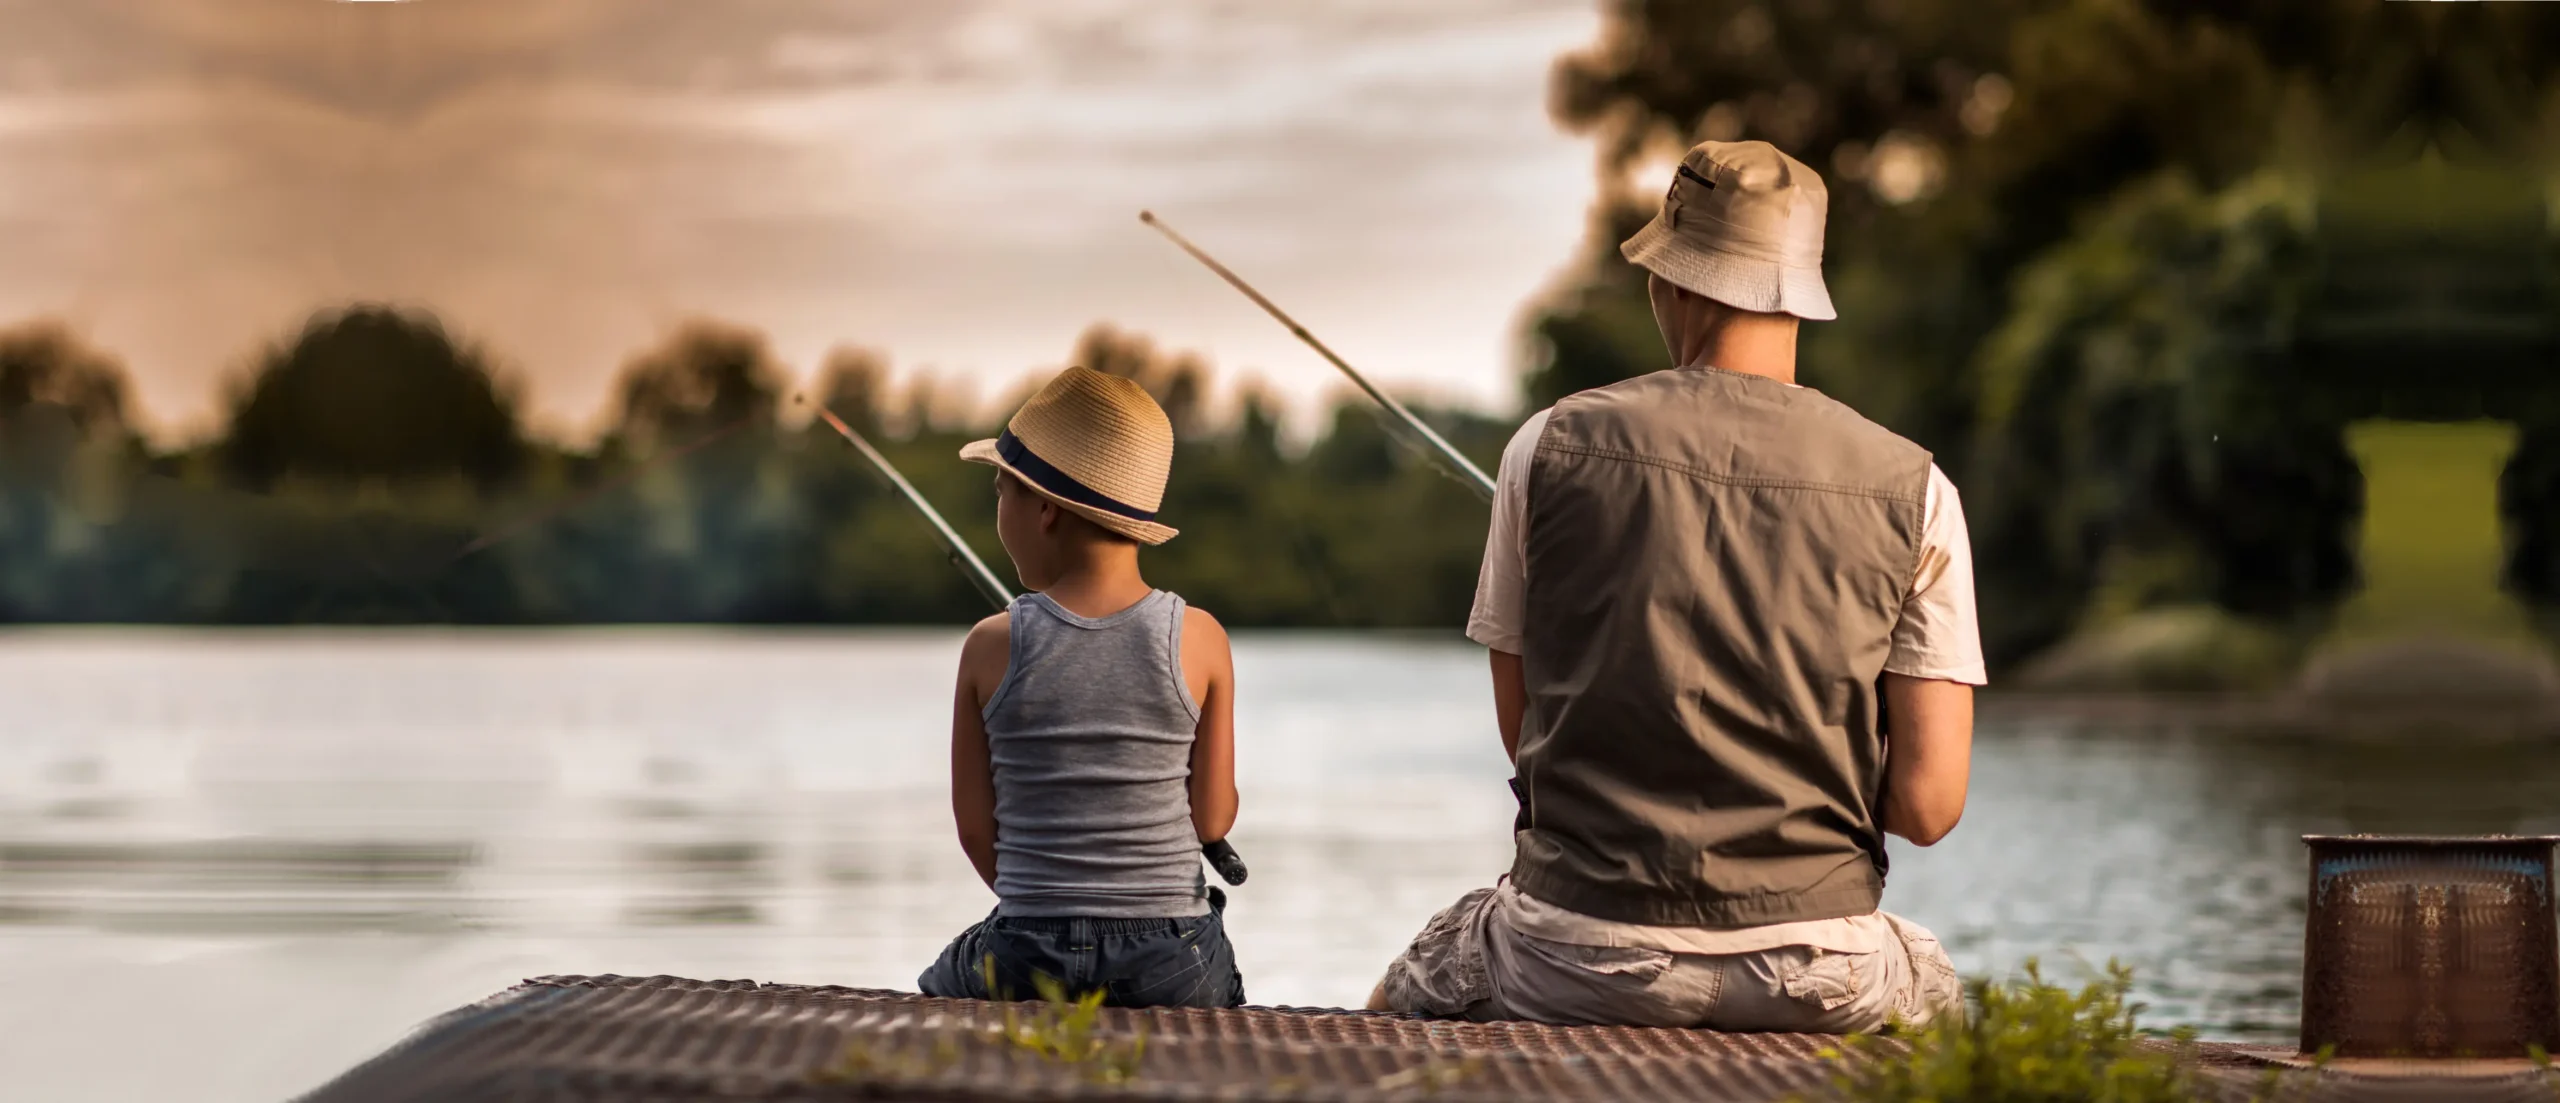 pesca de verano - Que se pesca en verano en el río Paraná